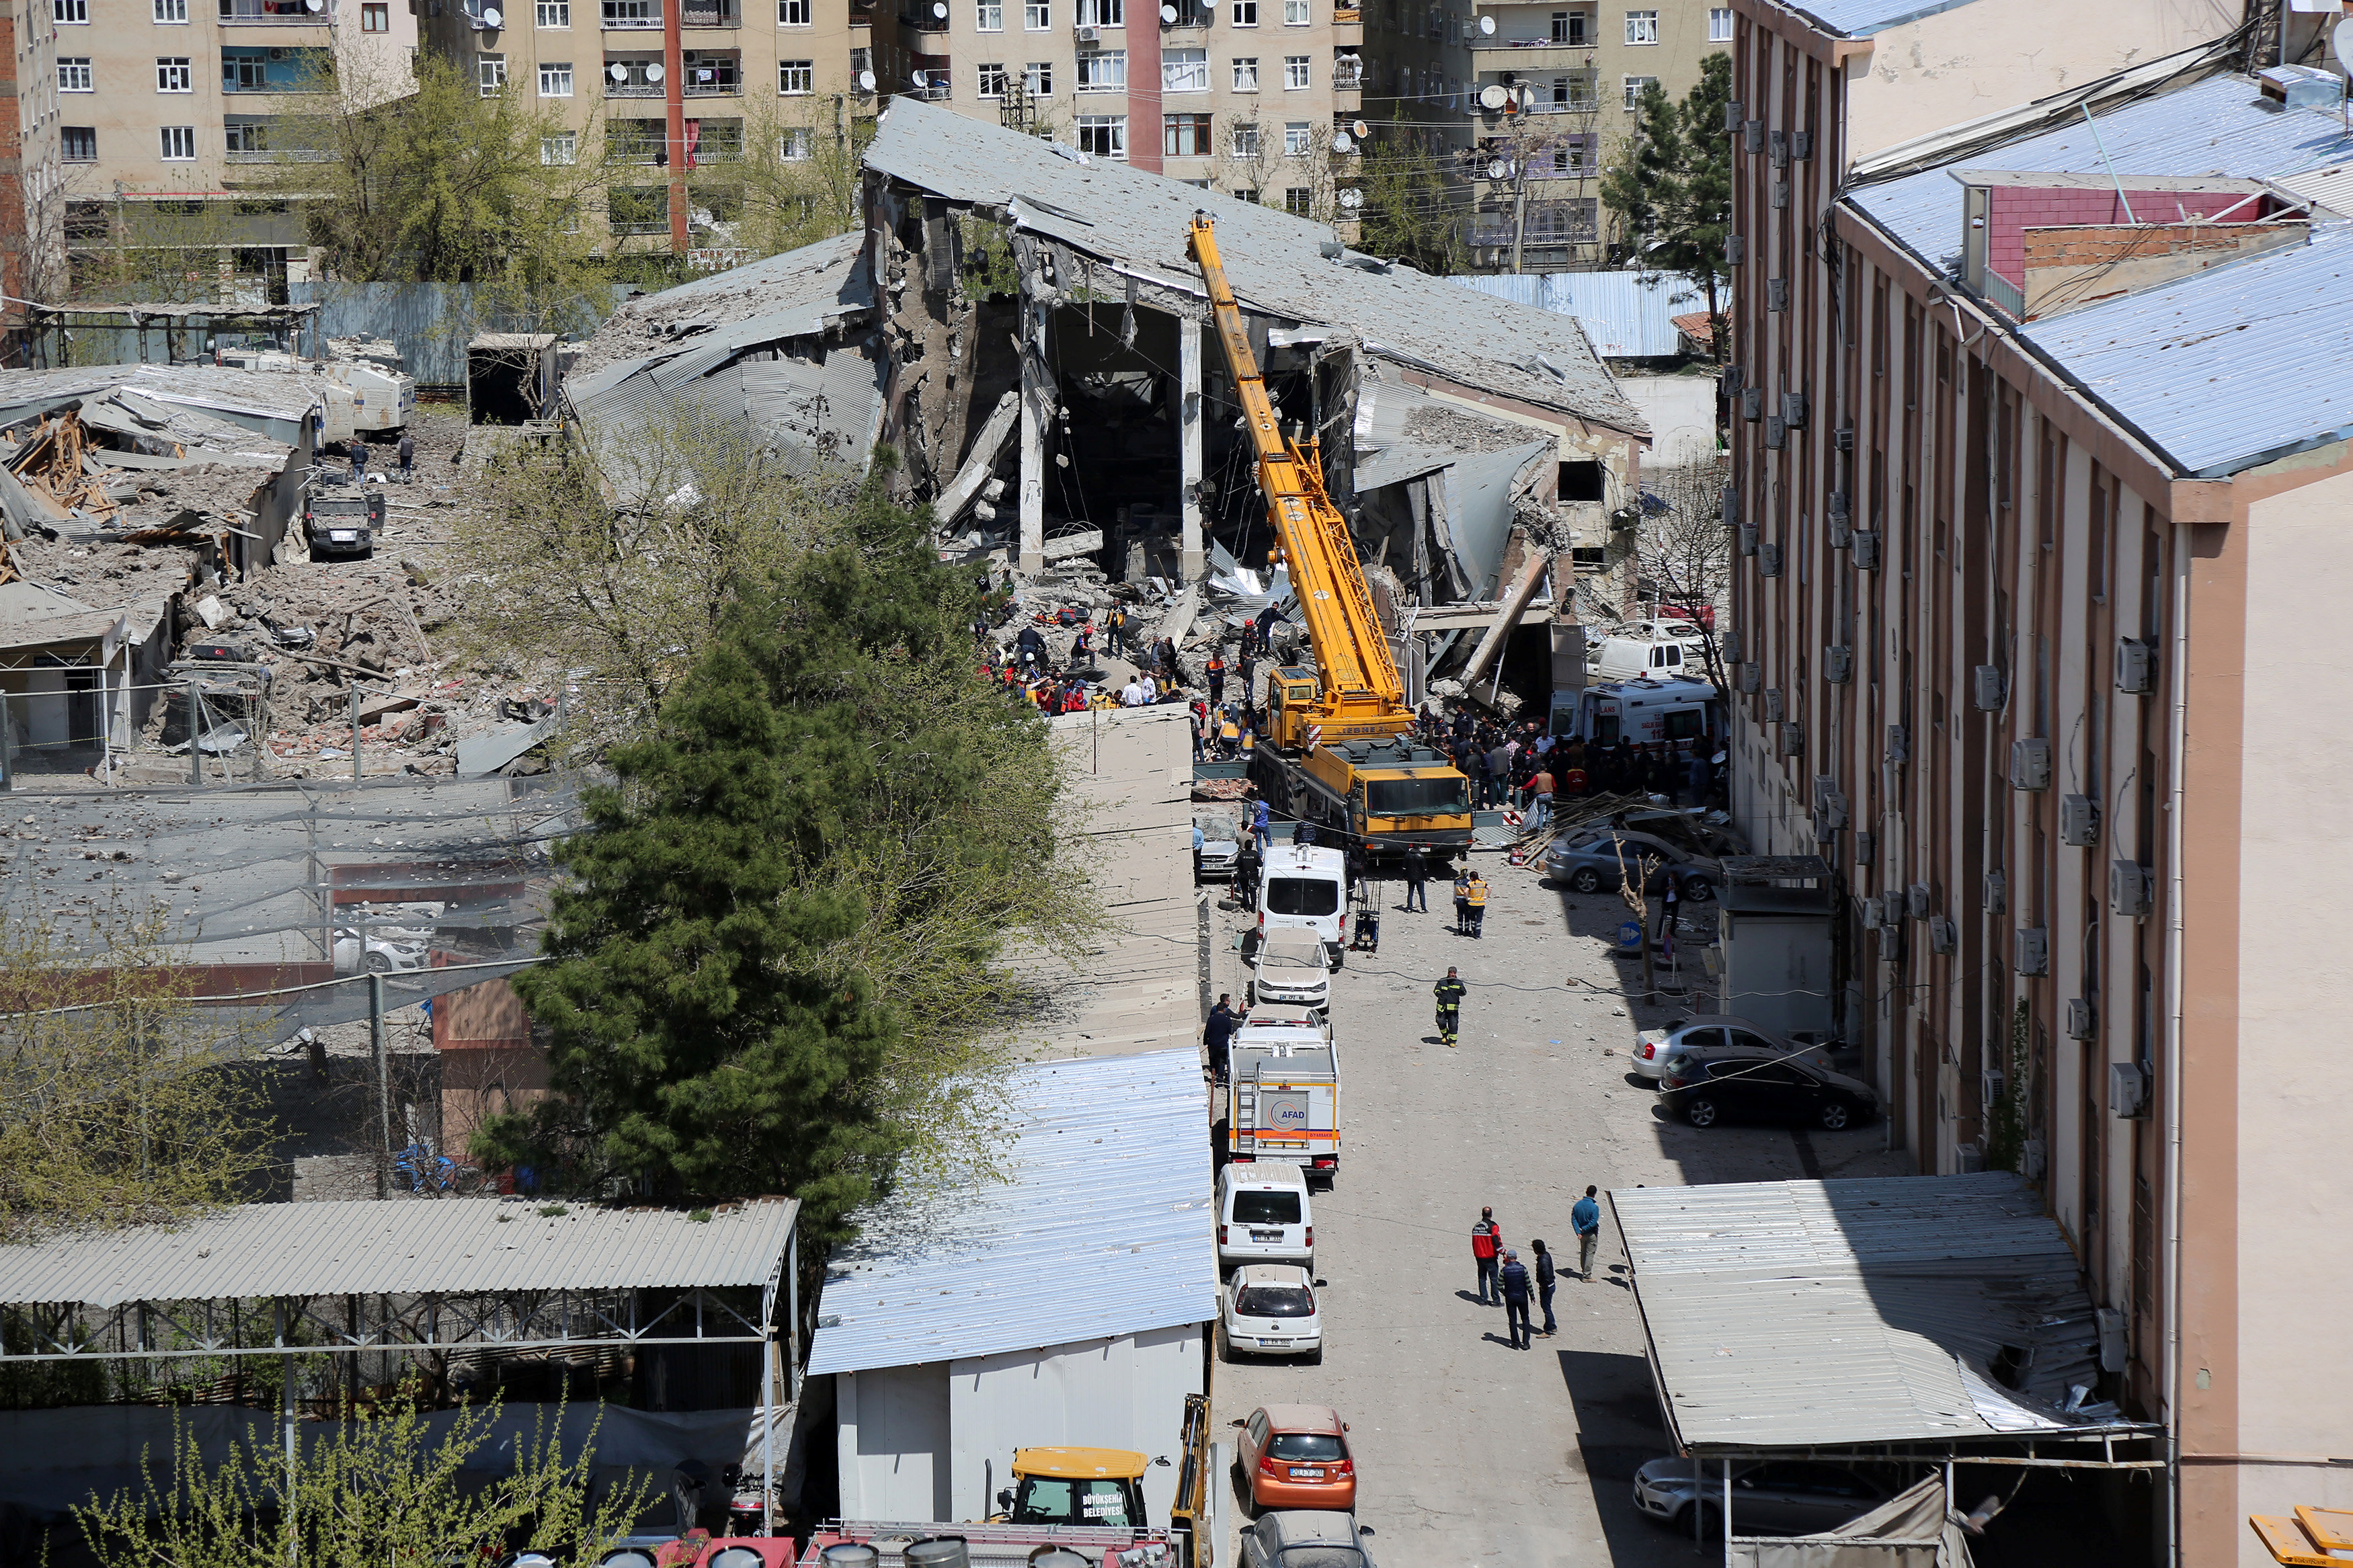 İçişleri Bakanı: Diyarbakır'daki patlama terör saldırısı